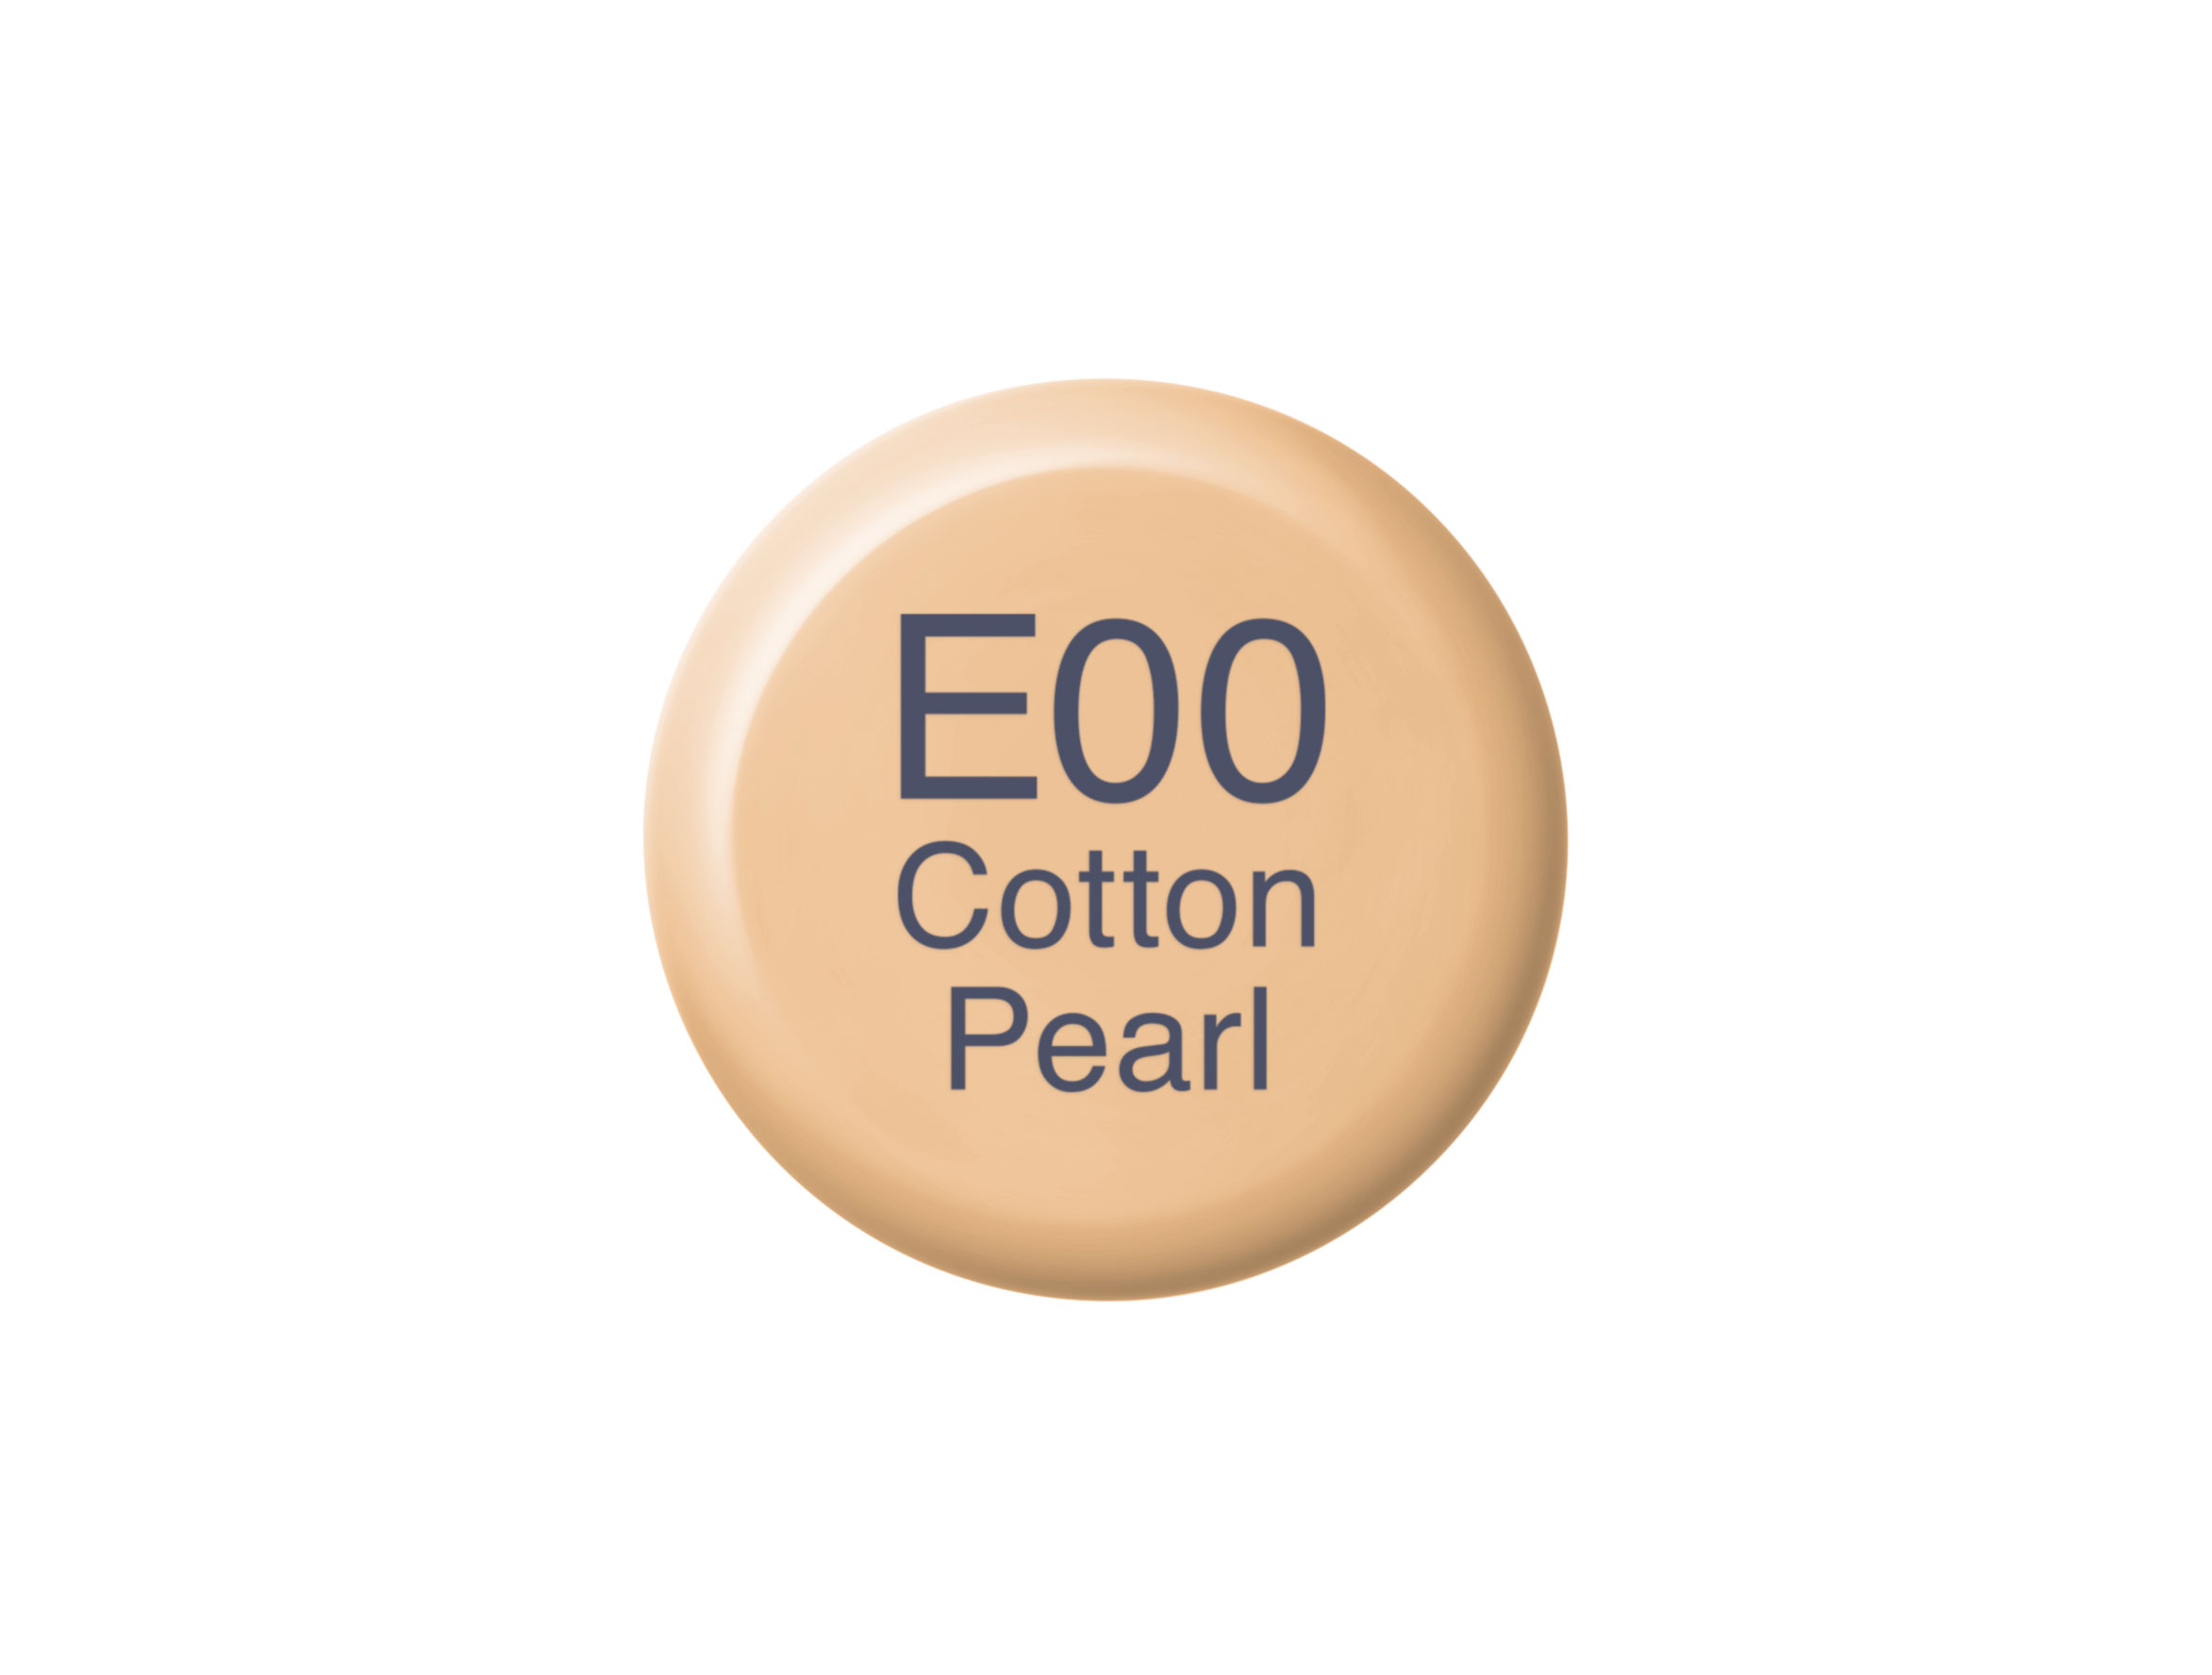 Copic Ink E00 Cotton Pearl